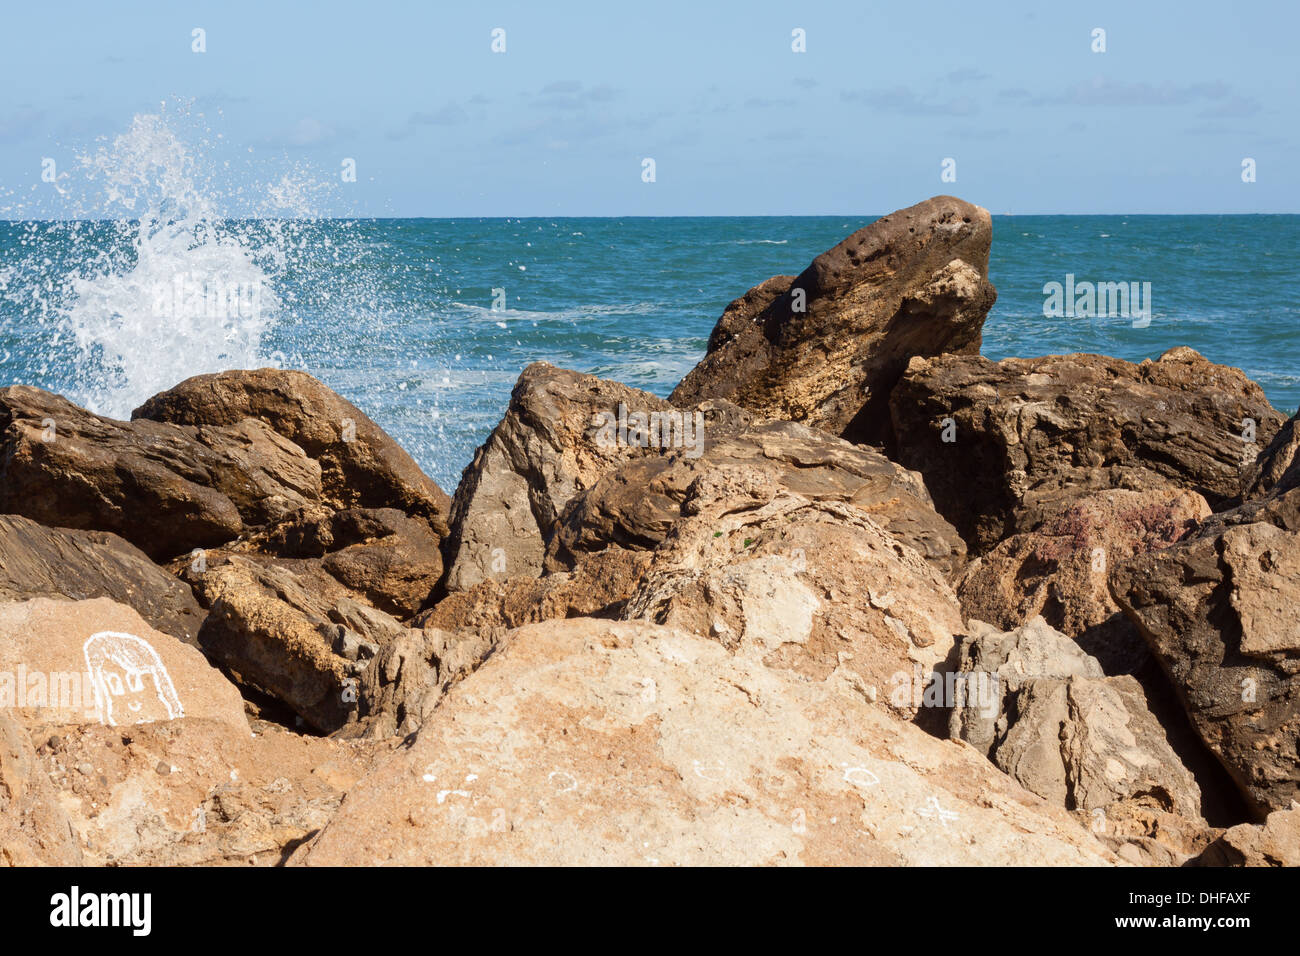 sea, rocks, stones, day, blue, wave, foam, braking, brake, horizon, water Stock Photo